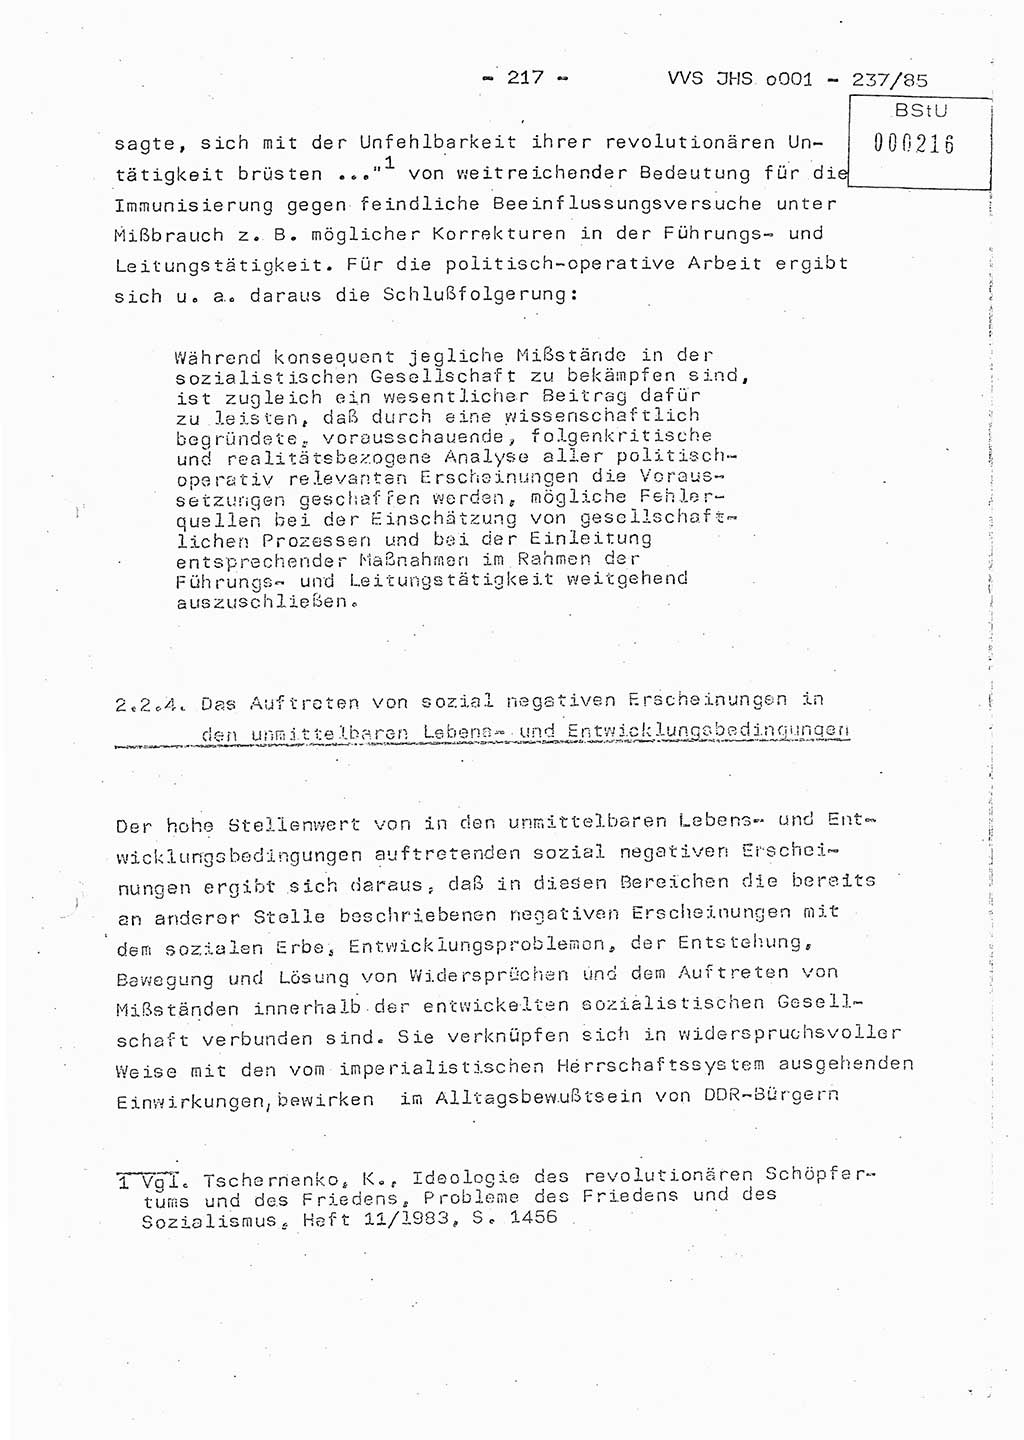 Dissertation Oberstleutnant Peter Jakulski (JHS), Oberstleutnat Christian Rudolph (HA Ⅸ), Major Horst Böttger (ZMD), Major Wolfgang Grüneberg (JHS), Major Albert Meutsch (JHS), Ministerium für Staatssicherheit (MfS) [Deutsche Demokratische Republik (DDR)], Juristische Hochschule (JHS), Vertrauliche Verschlußsache (VVS) o001-237/85, Potsdam 1985, Seite 217 (Diss. MfS DDR JHS VVS o001-237/85 1985, S. 217)